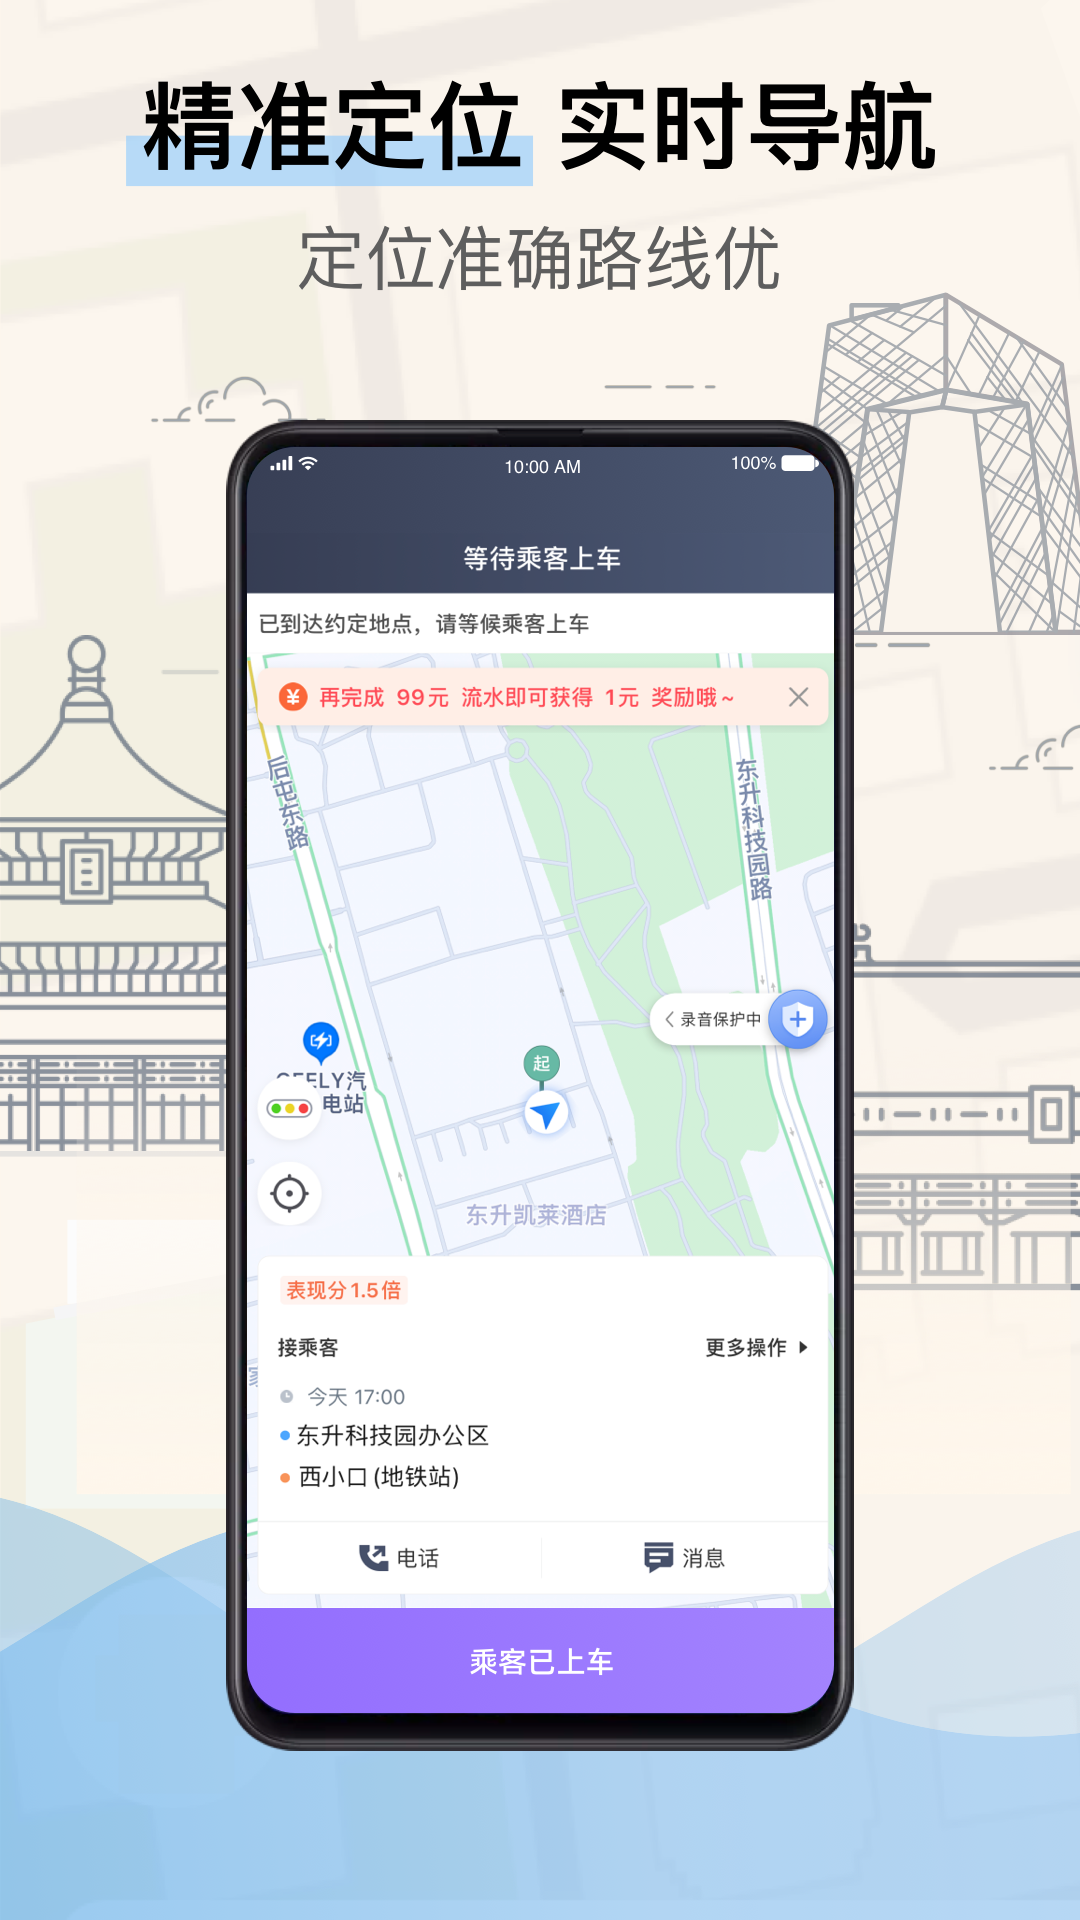 北京的士司机端安卓版下载